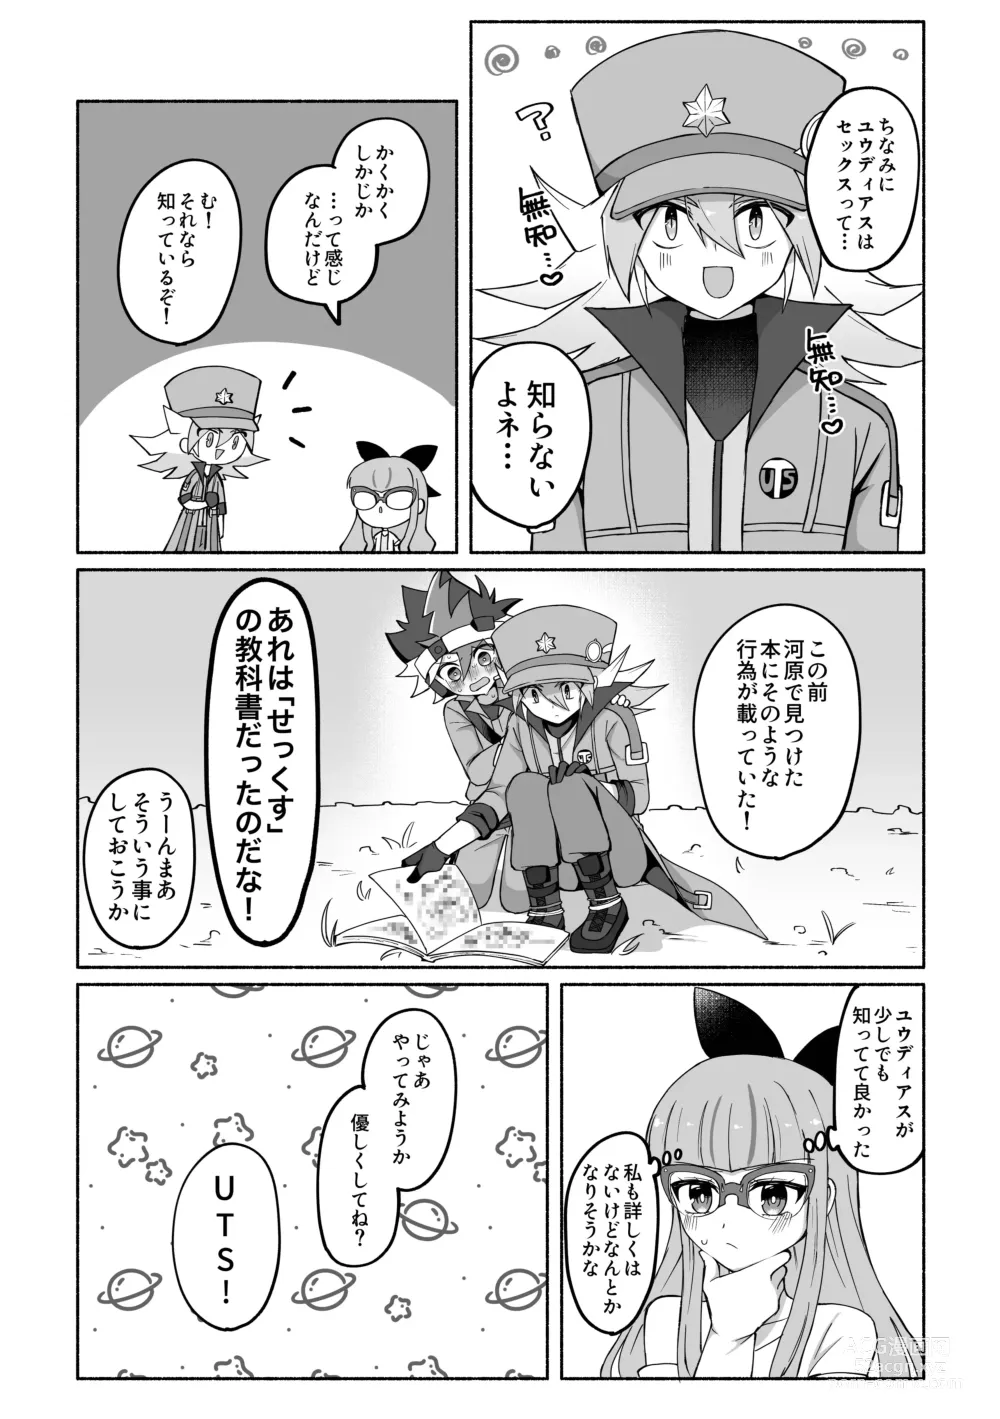 Page 3 of doujinshi Yudi yu a manga